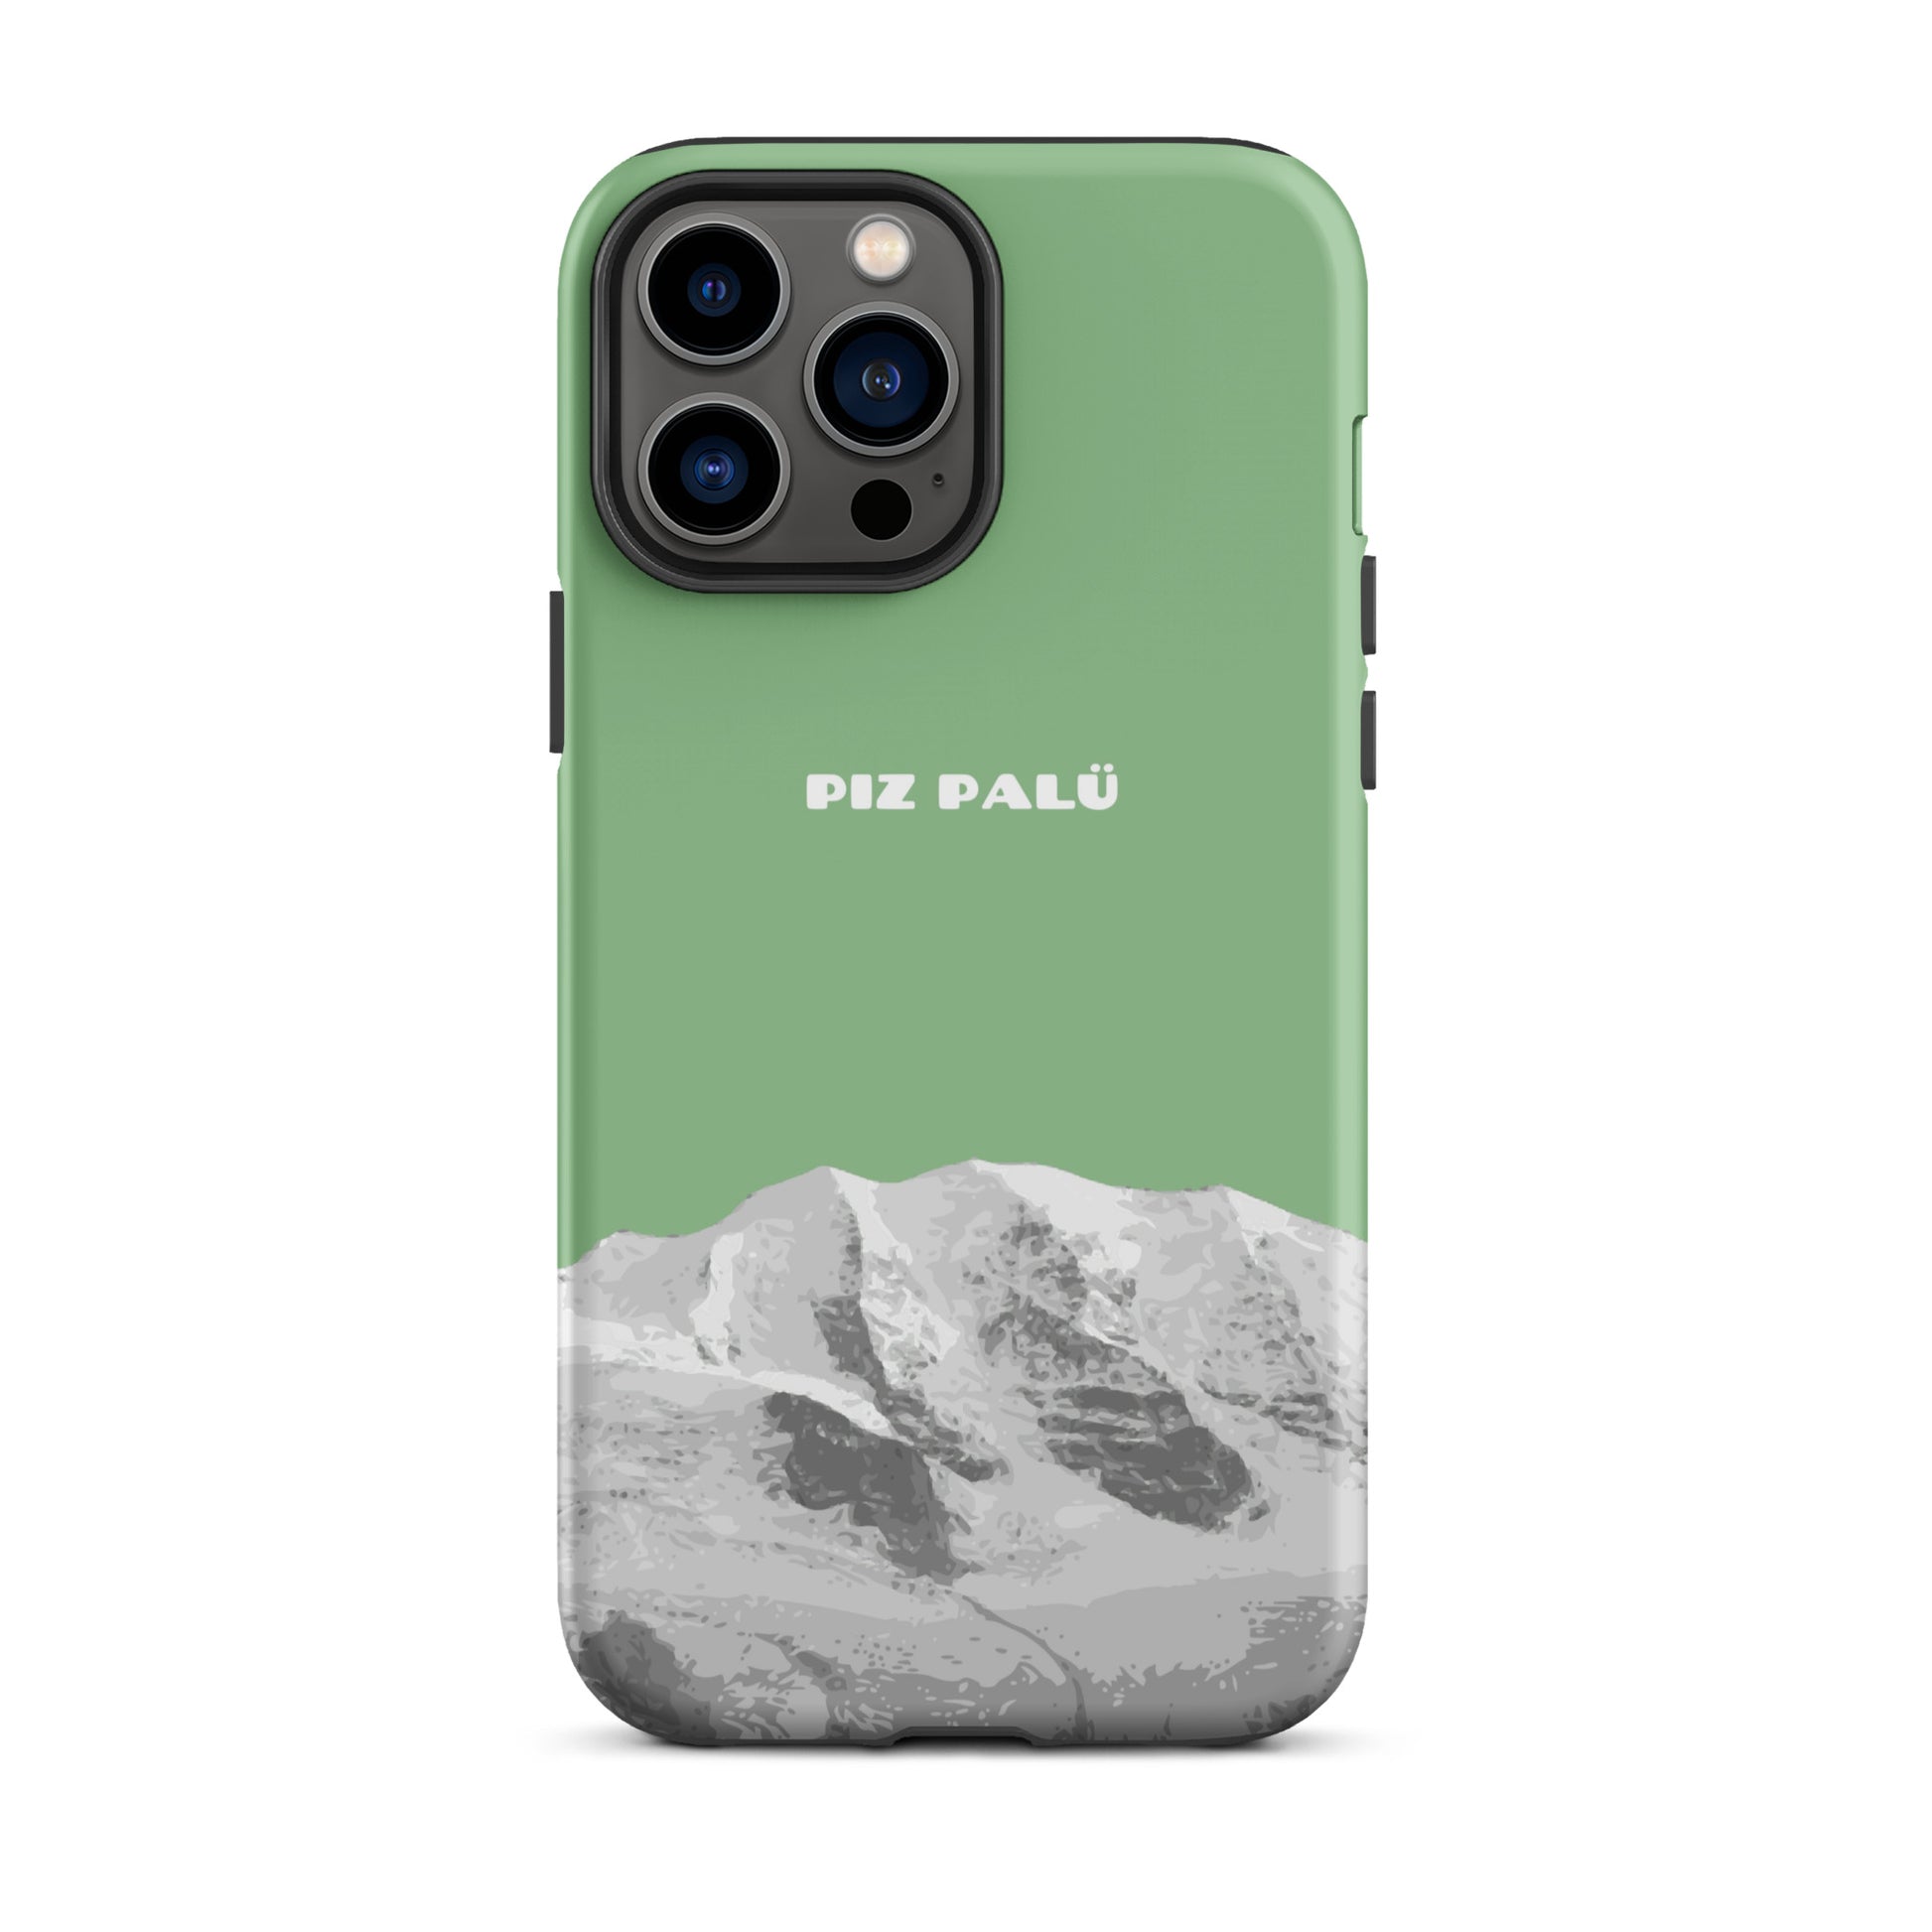 Hülle für das iPhone 13 Pro Max von Apple in der Farbe Hellgrün, dass den Piz Palü in Graubünden zeigt.